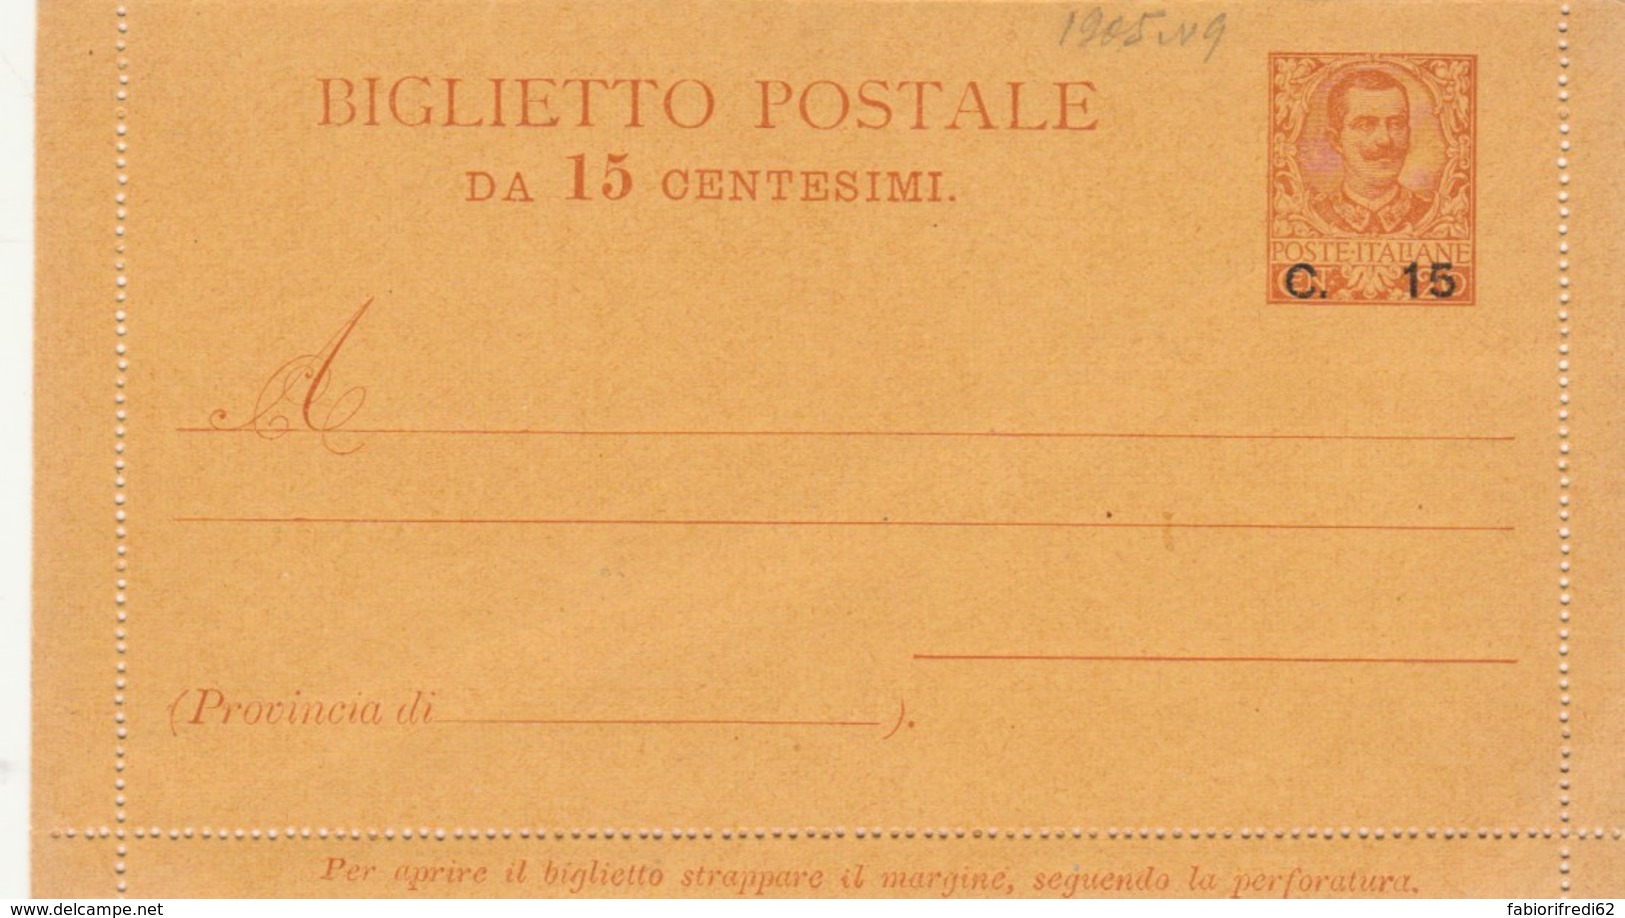 BIGLIETTO POSTALE C.15 SU 20 -1905 NUOVO (IX501 - Entiers Postaux